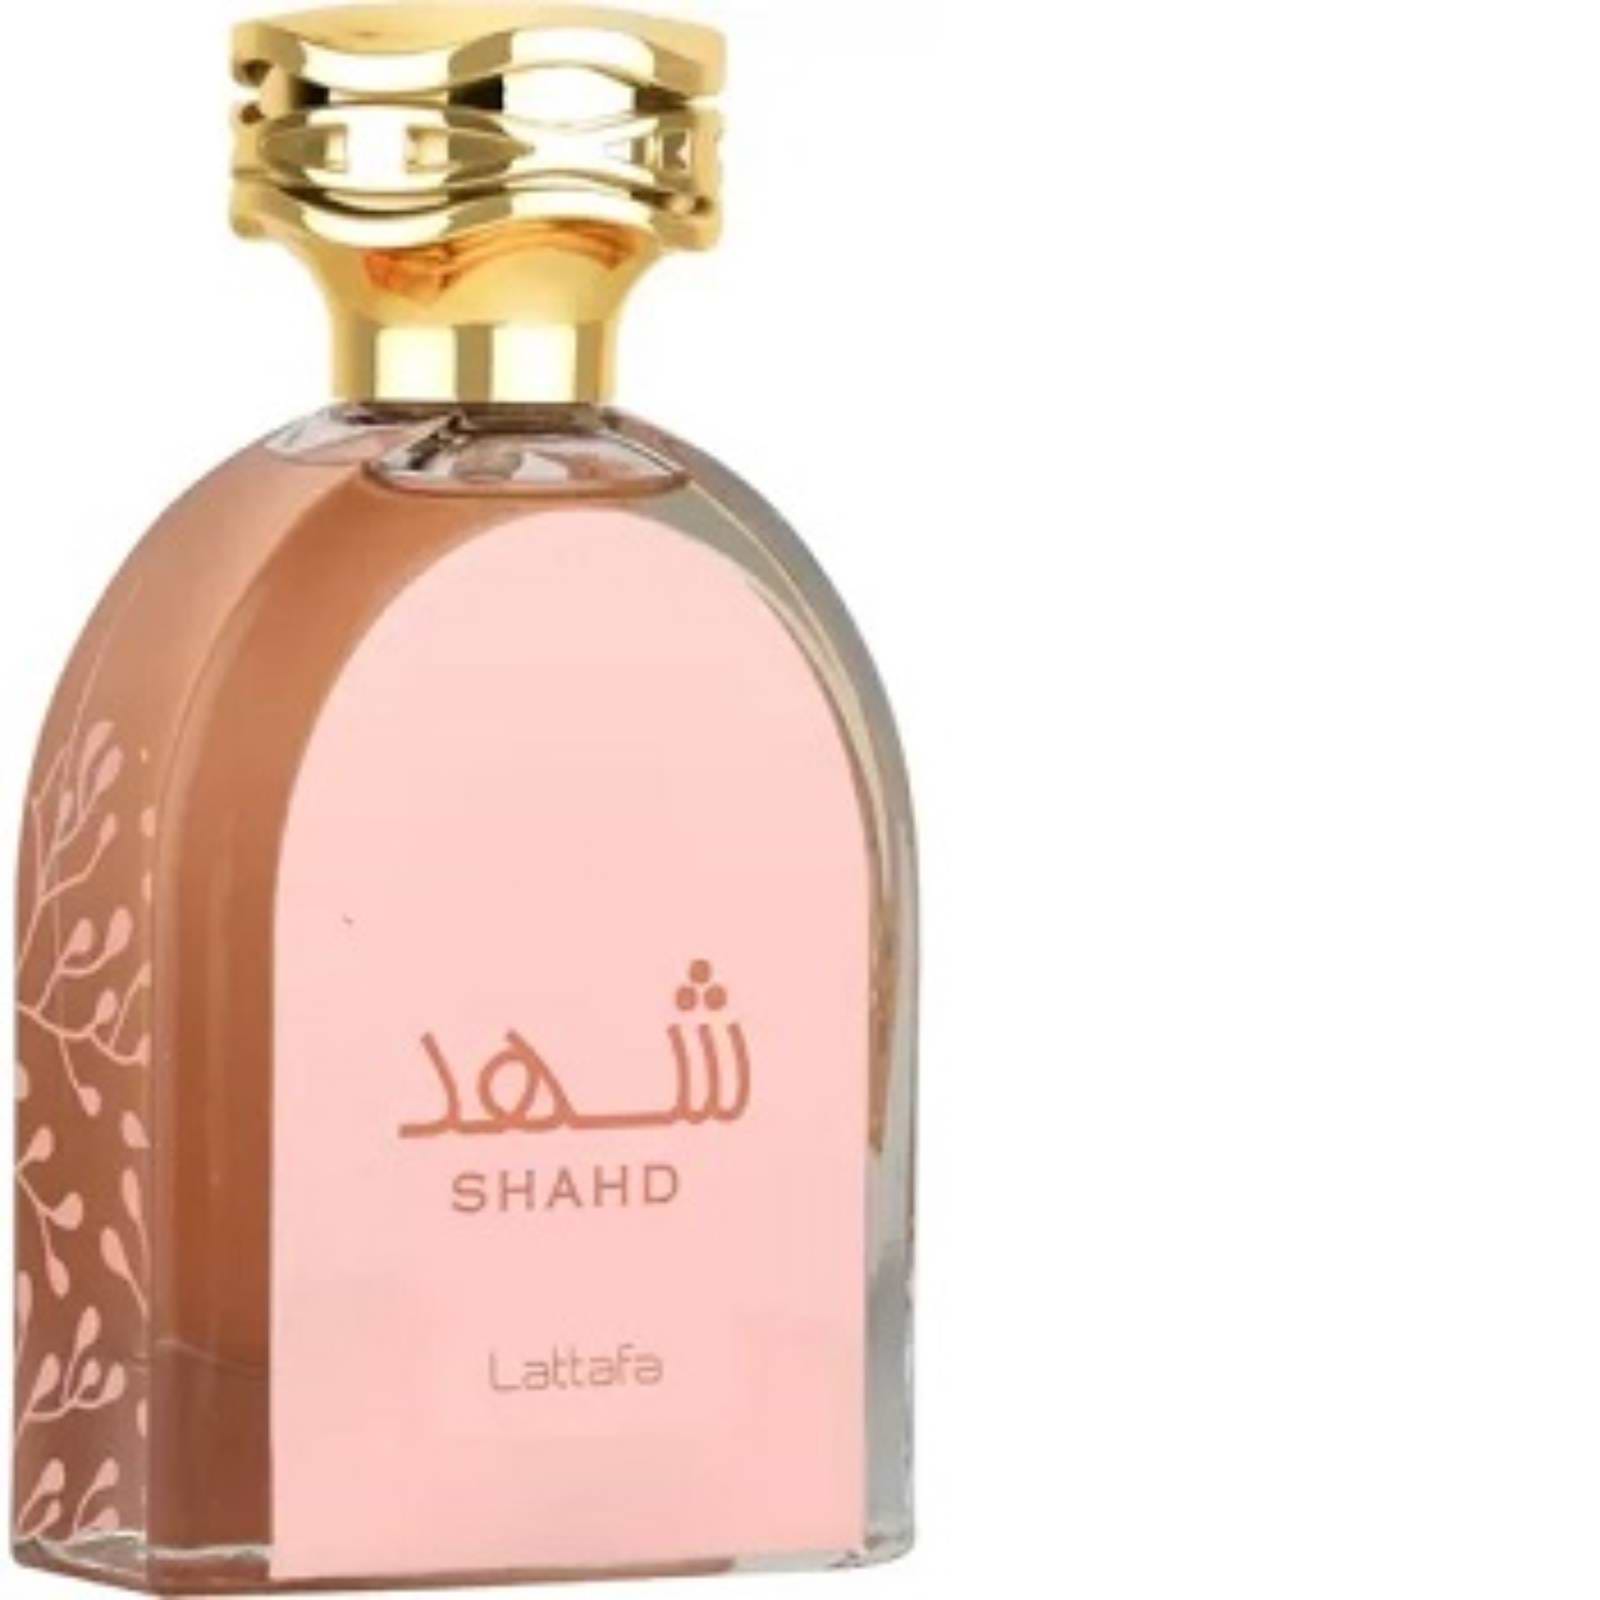 בושם יוניסקס Lattafa Perfume Shahd Eau de Parfum 100ml